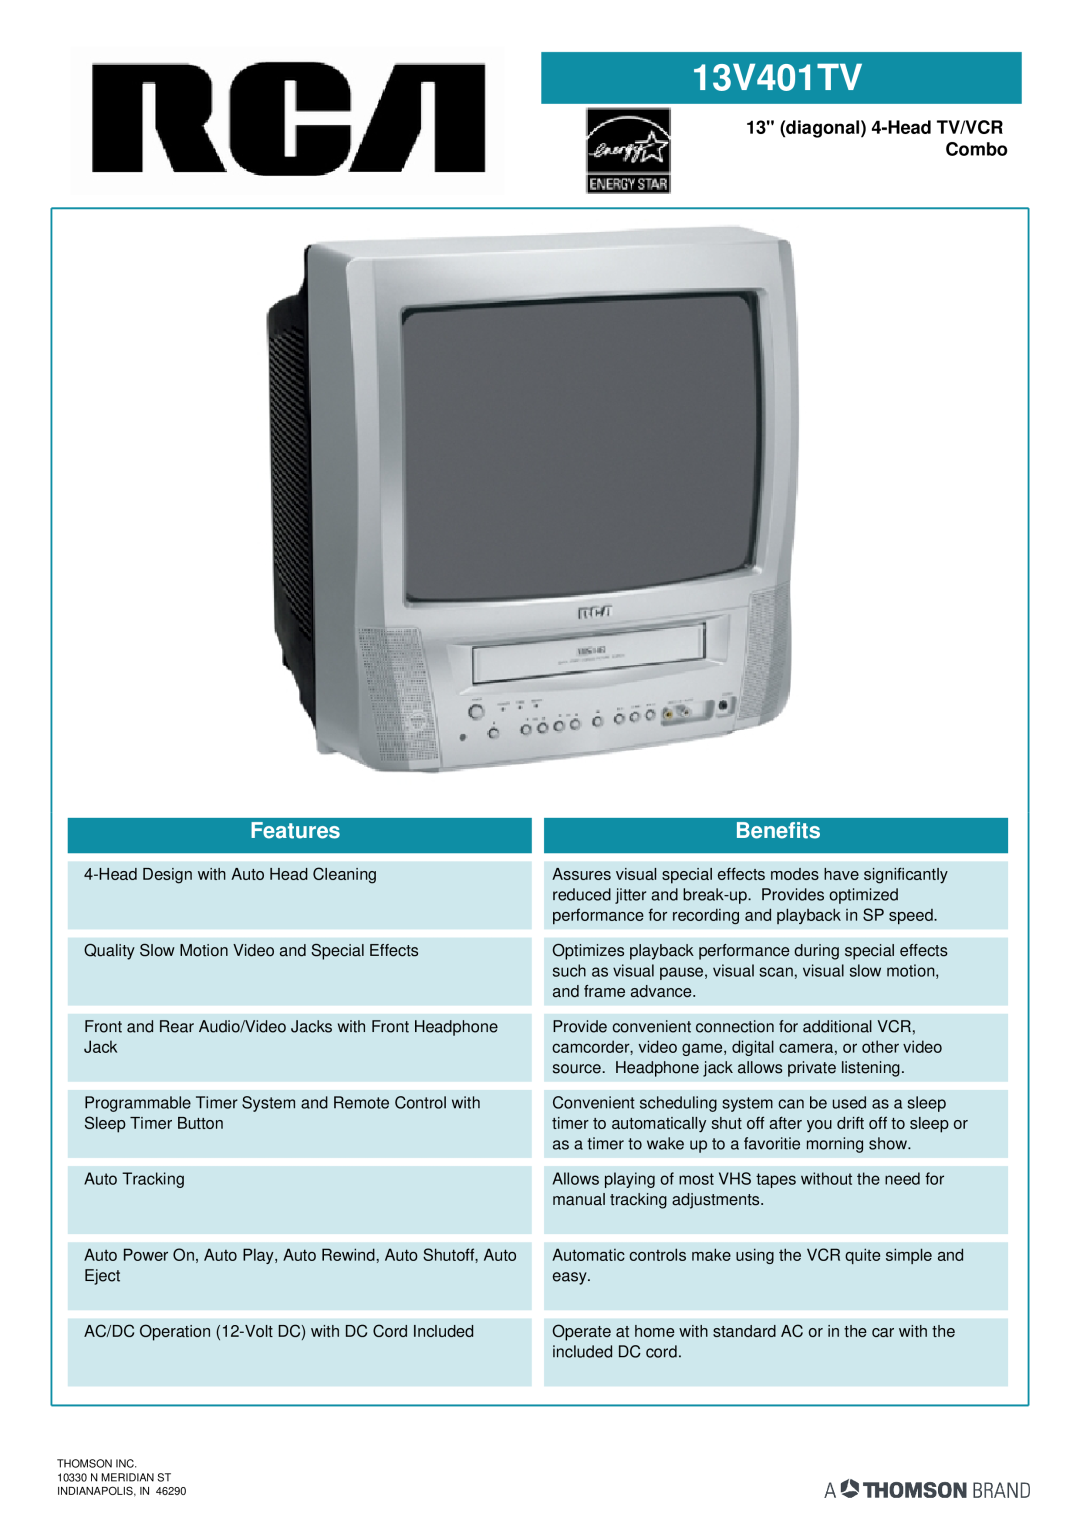 RCA 13V401TV manual diagonal 4-Head TV/VCR Combo, Features, Benefits 